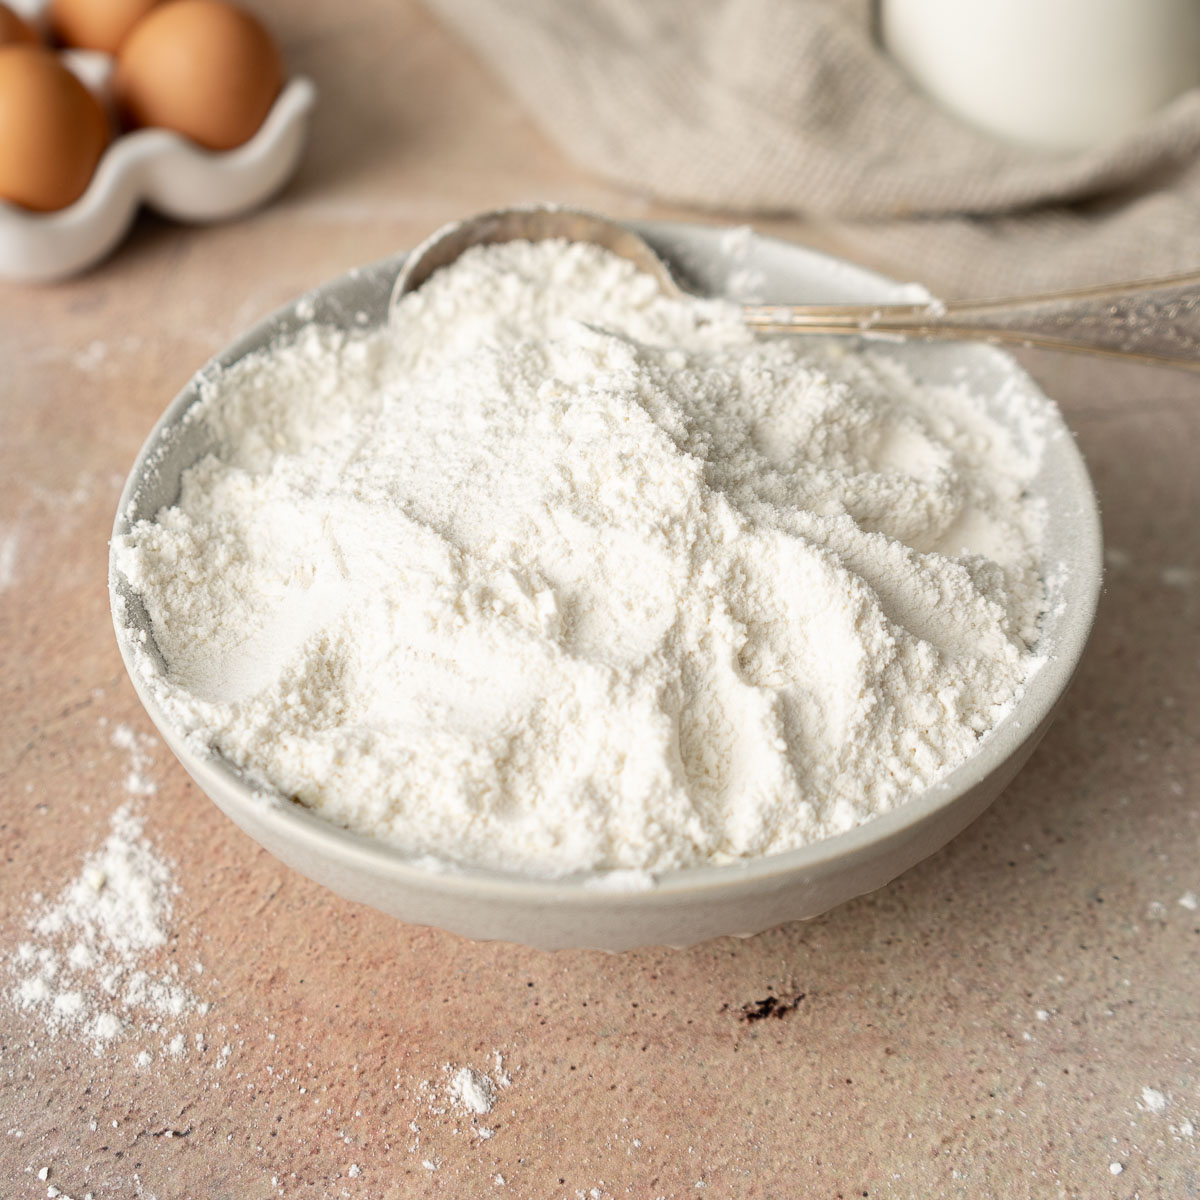 Flour in a bowl. 